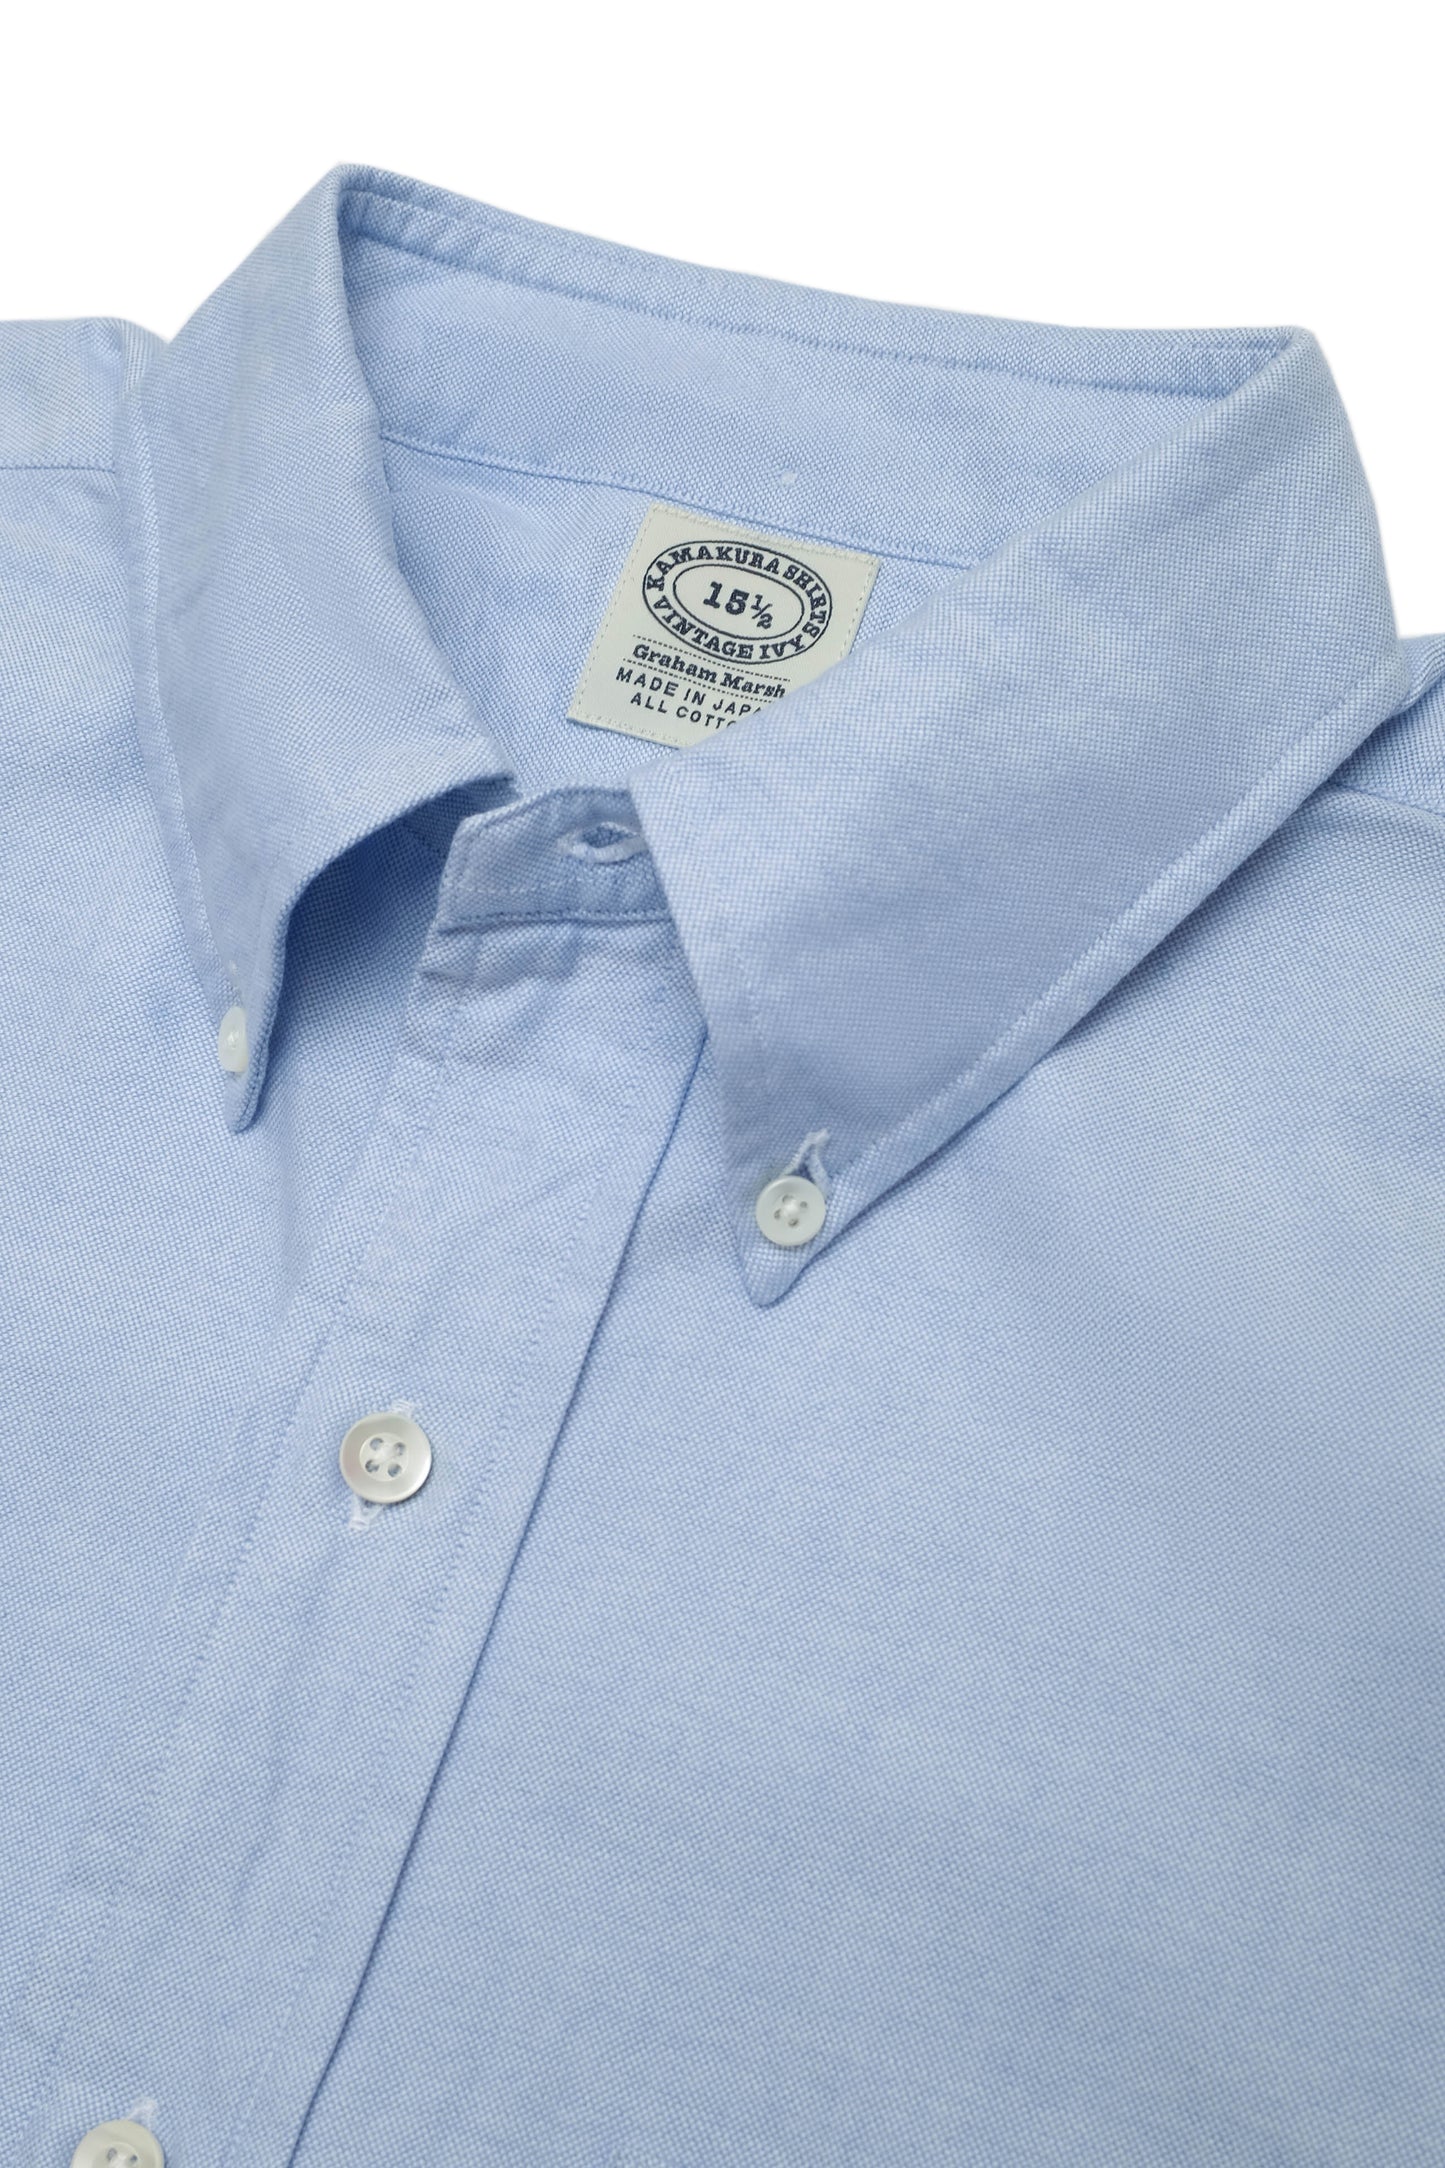 Vintage Ivy’ Oxford Shirt - Light Blue